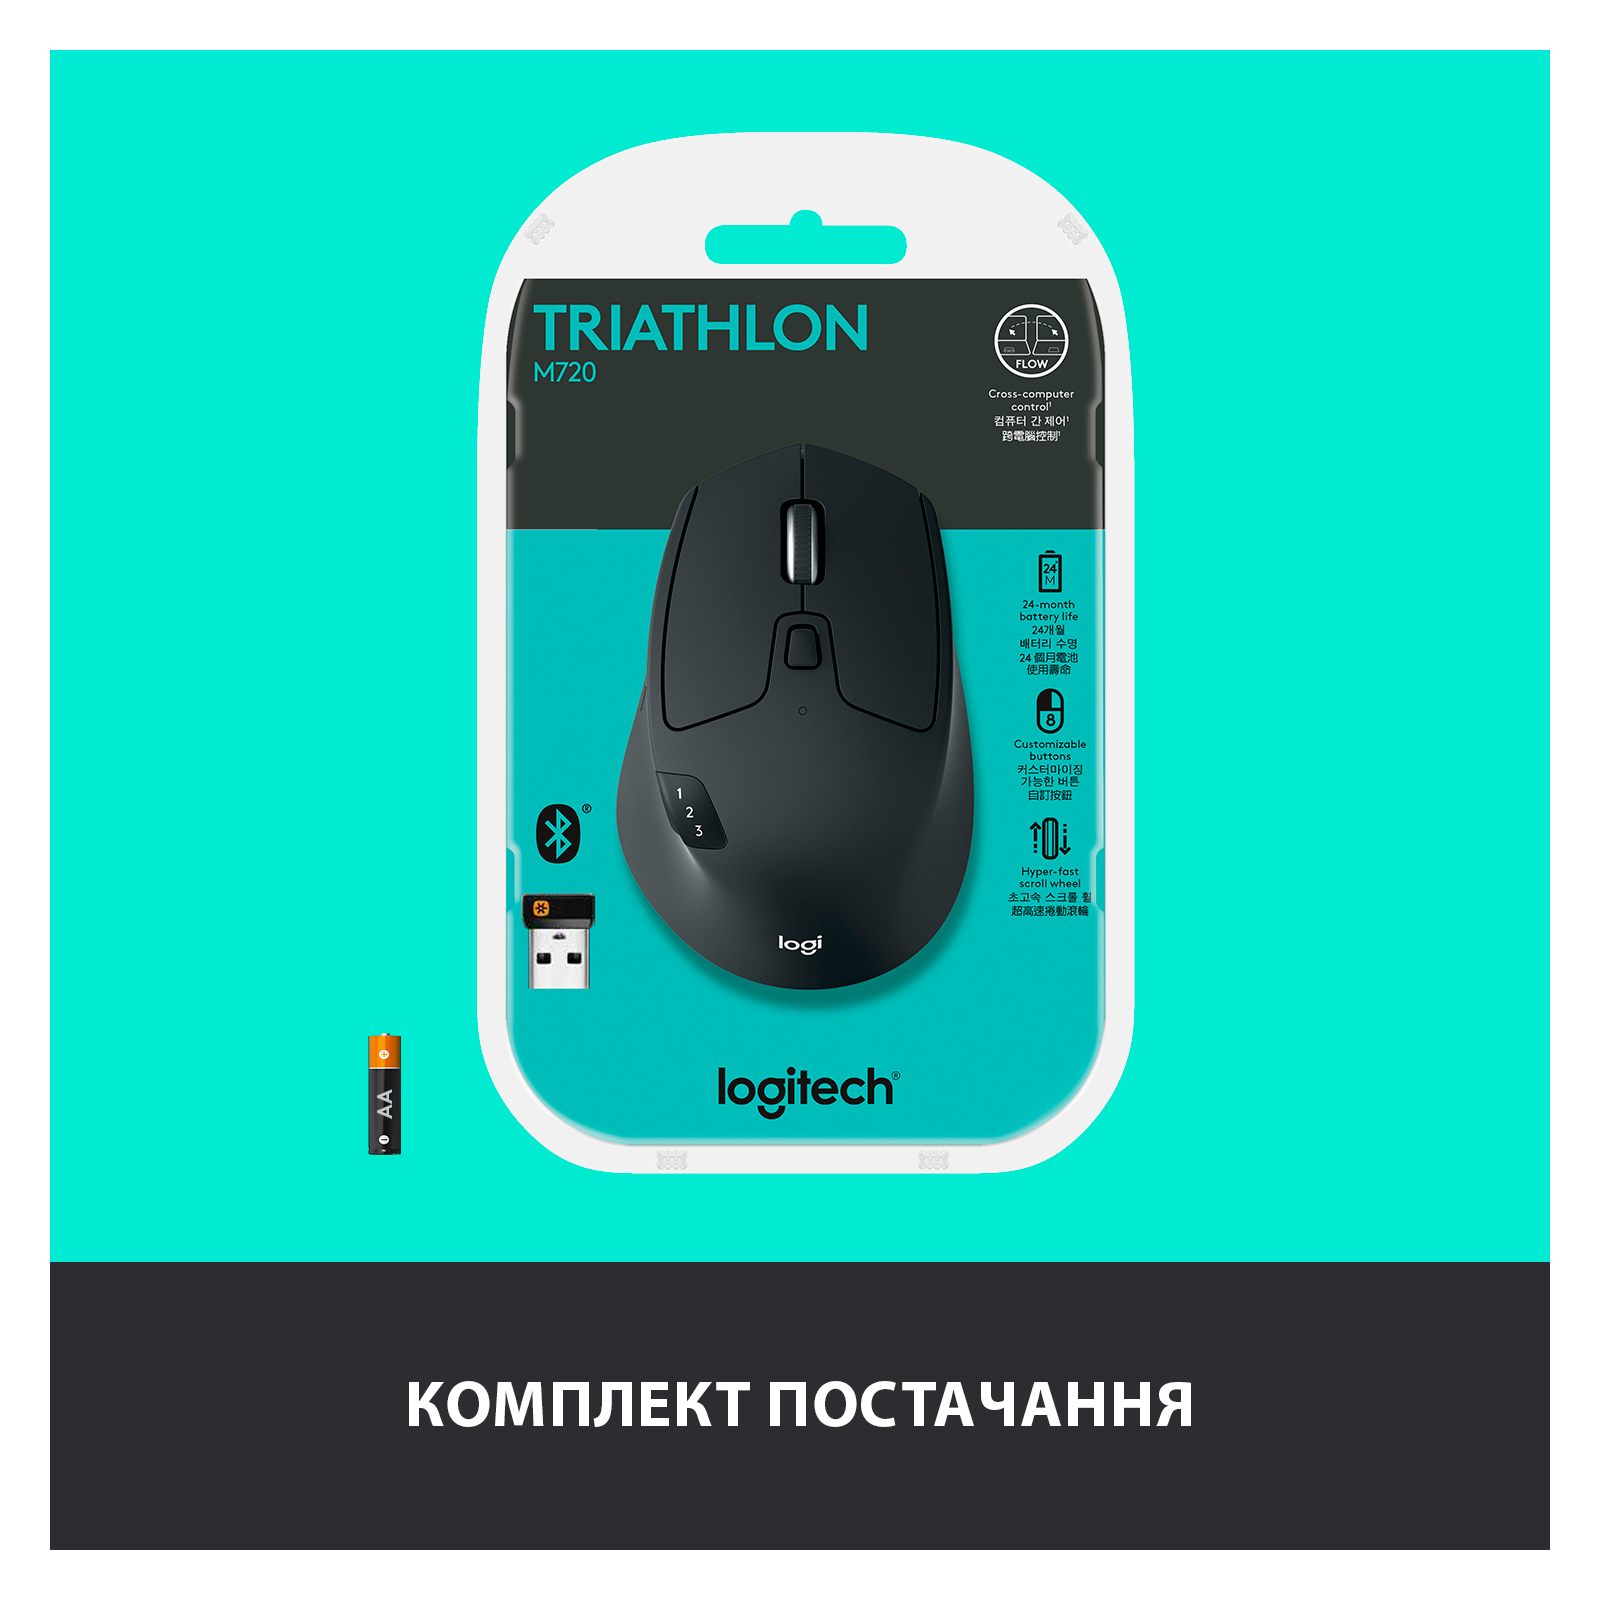 Мышка Logitech M720 Triathlon (910-004791) изображение 10